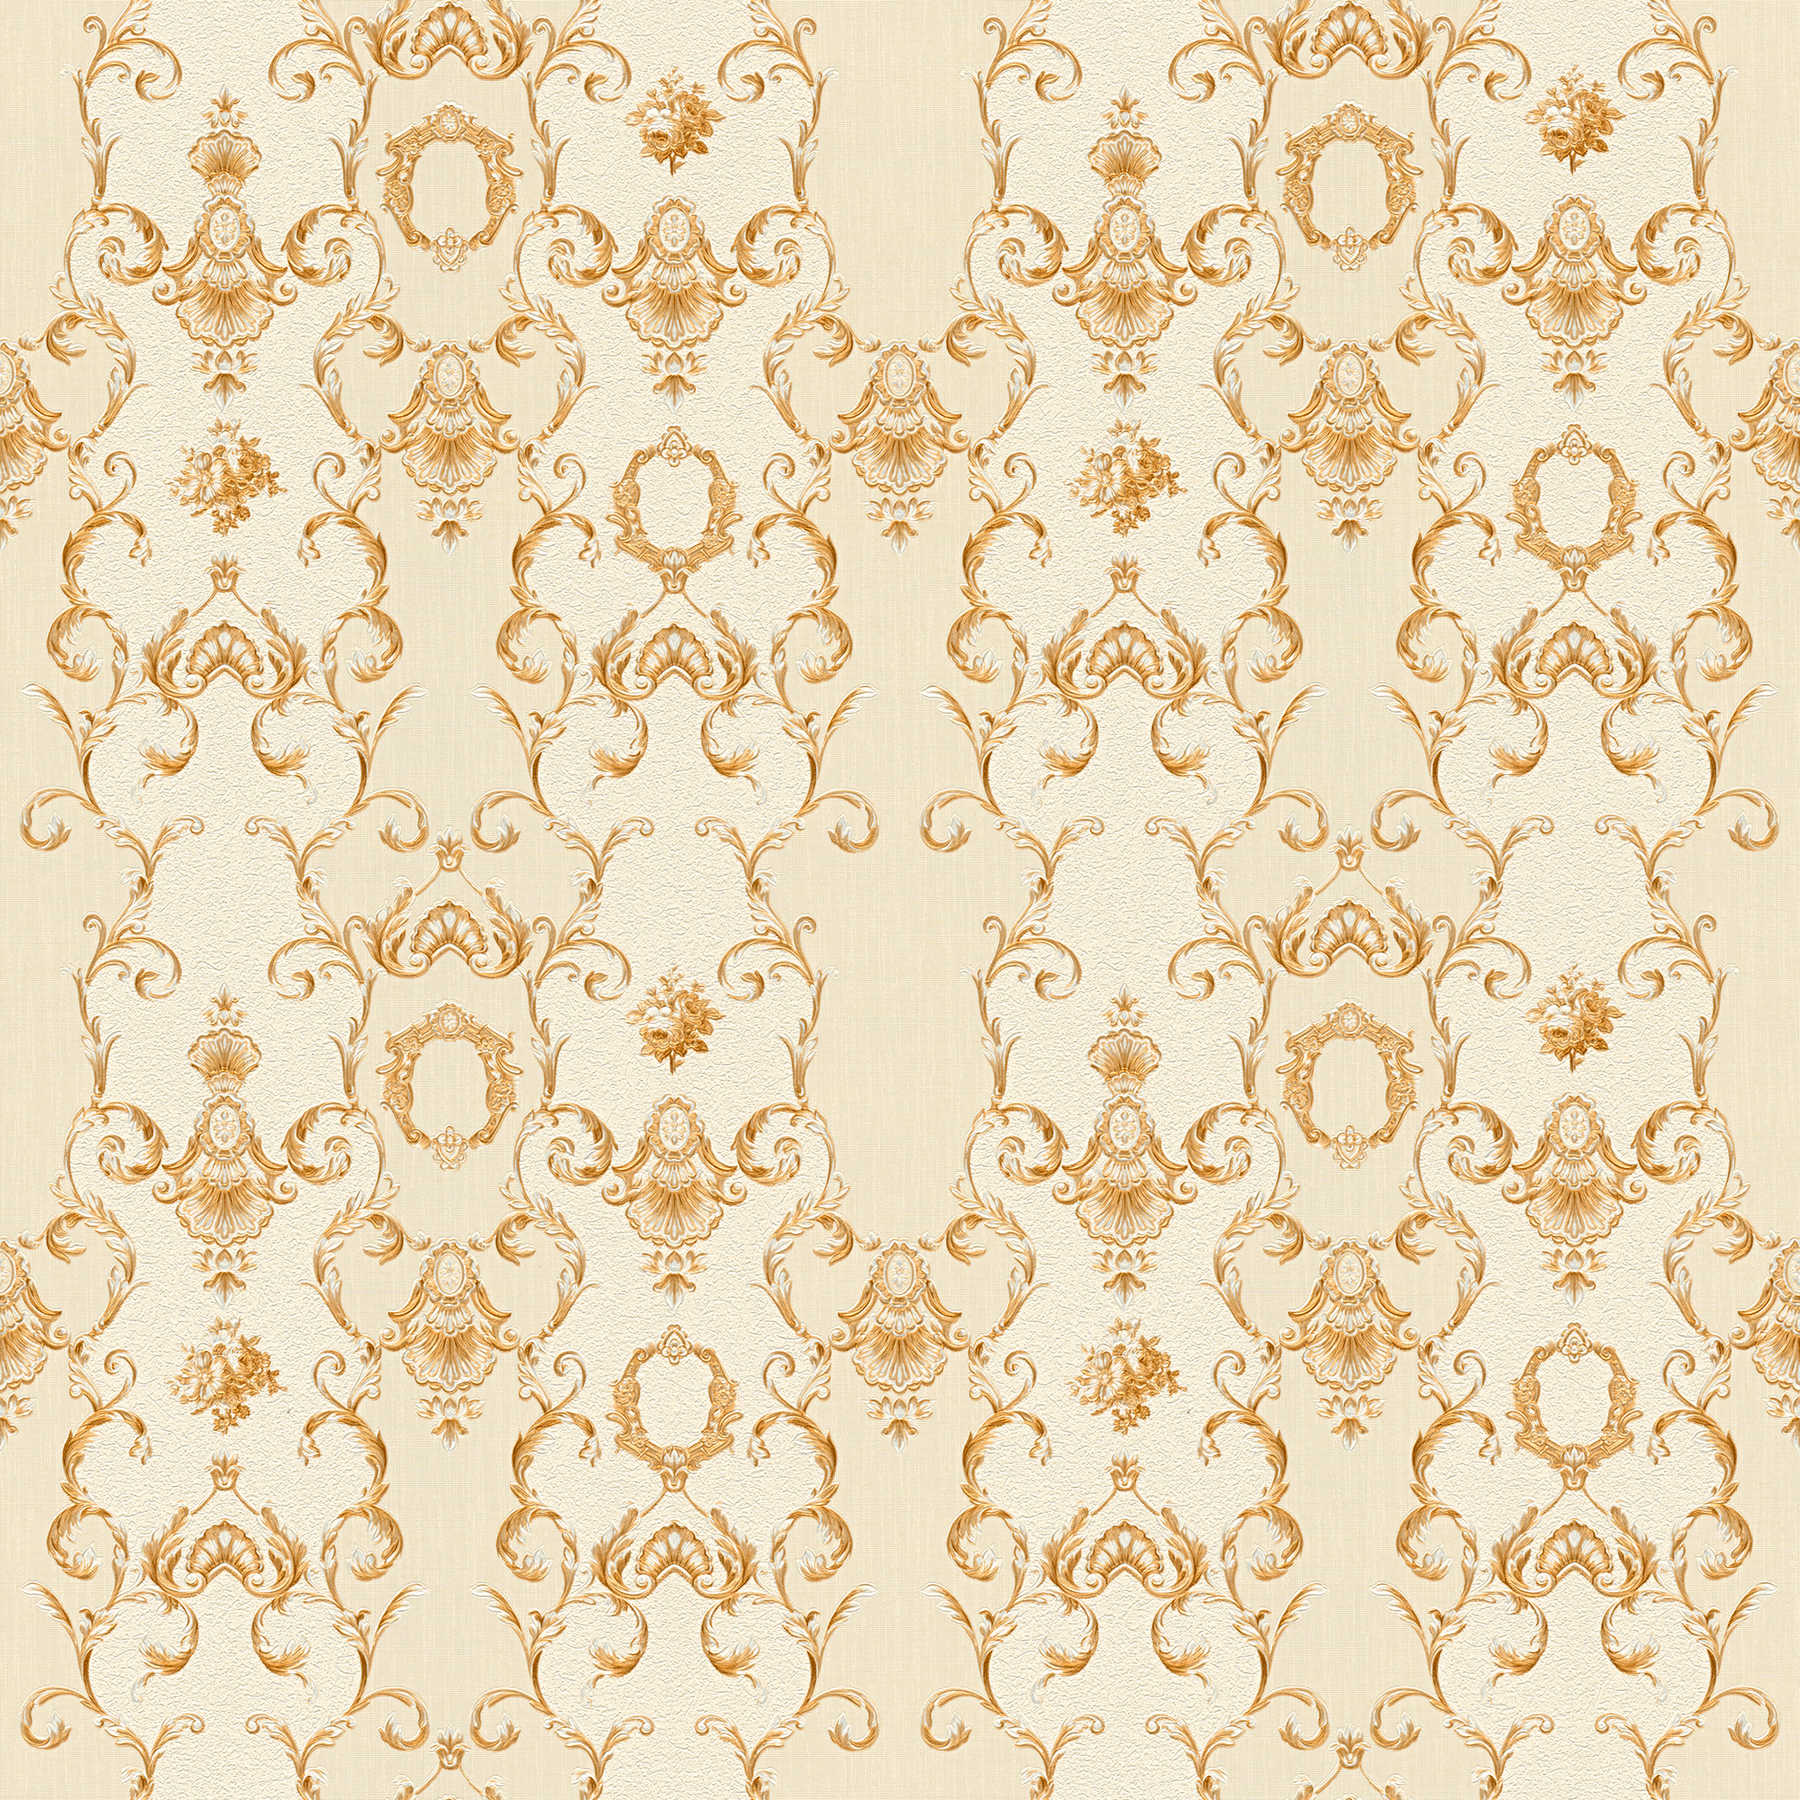 Neo baroque wallpaper filigree ornaments - cream, metallic
